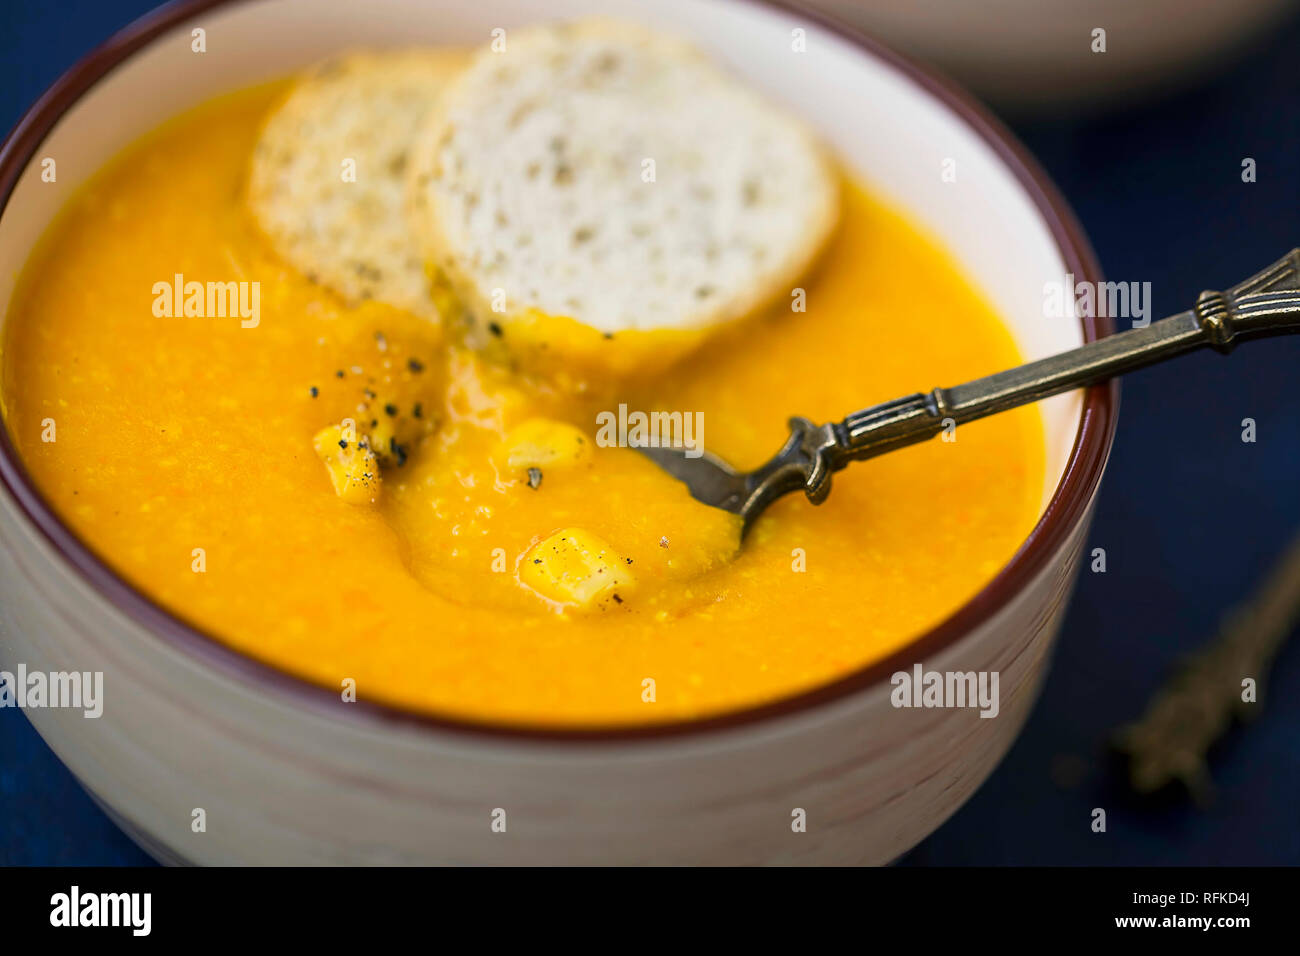 Crema fresca zuppa di mais, deliziosi piatti gustosi ciotola calda di vegetali di mais minestra in crema Foto Stock